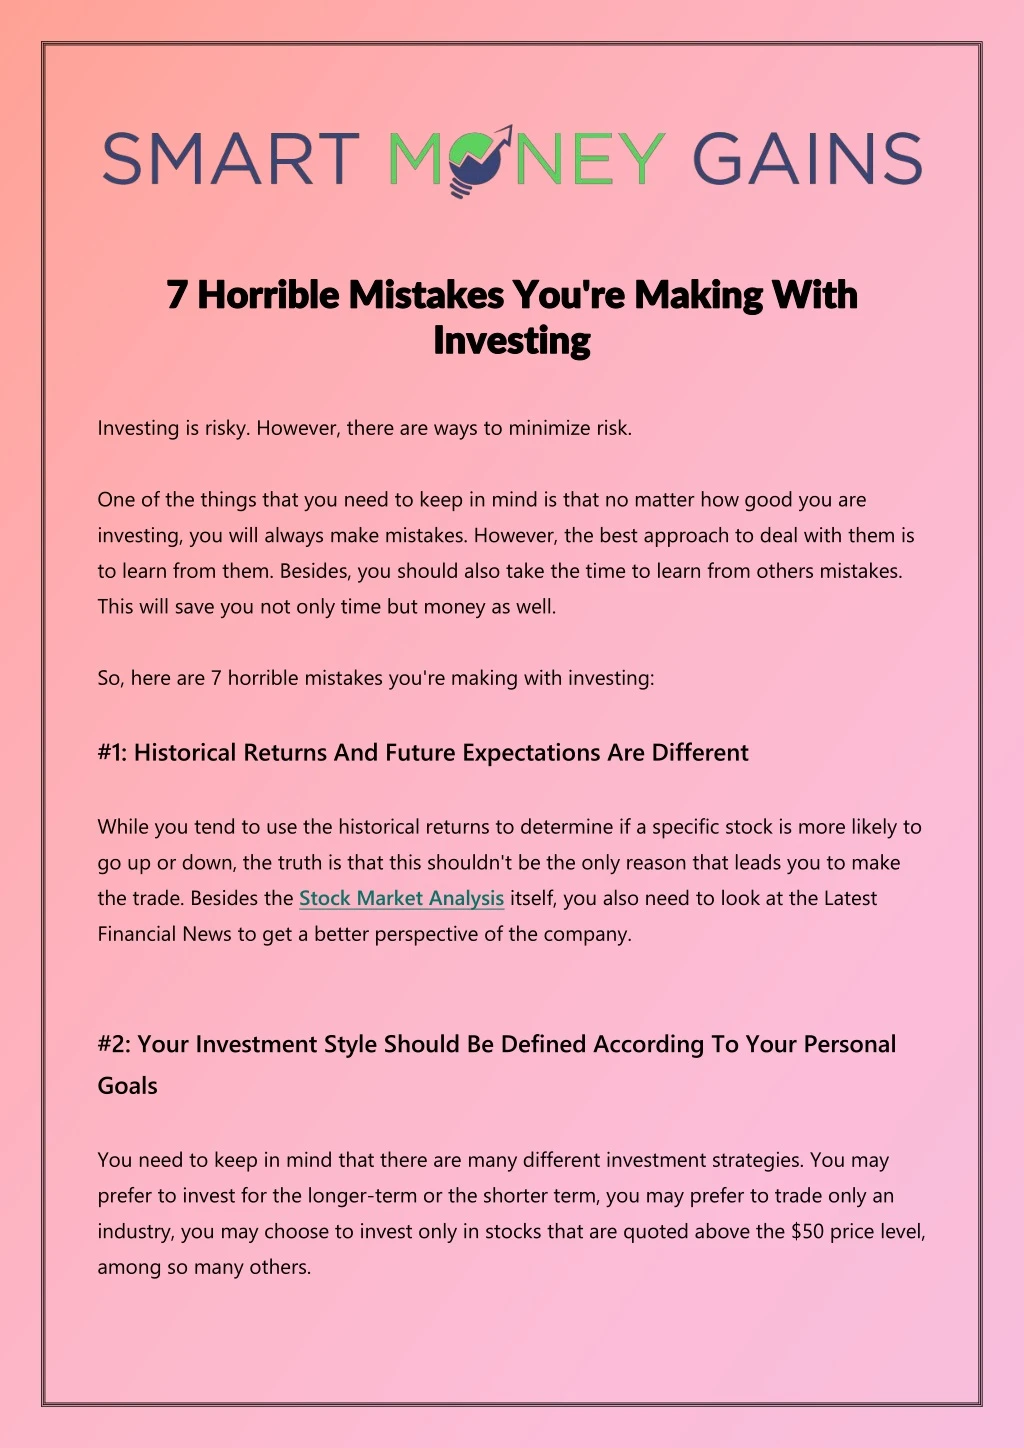 7 7 horrible horrible mistakes n.